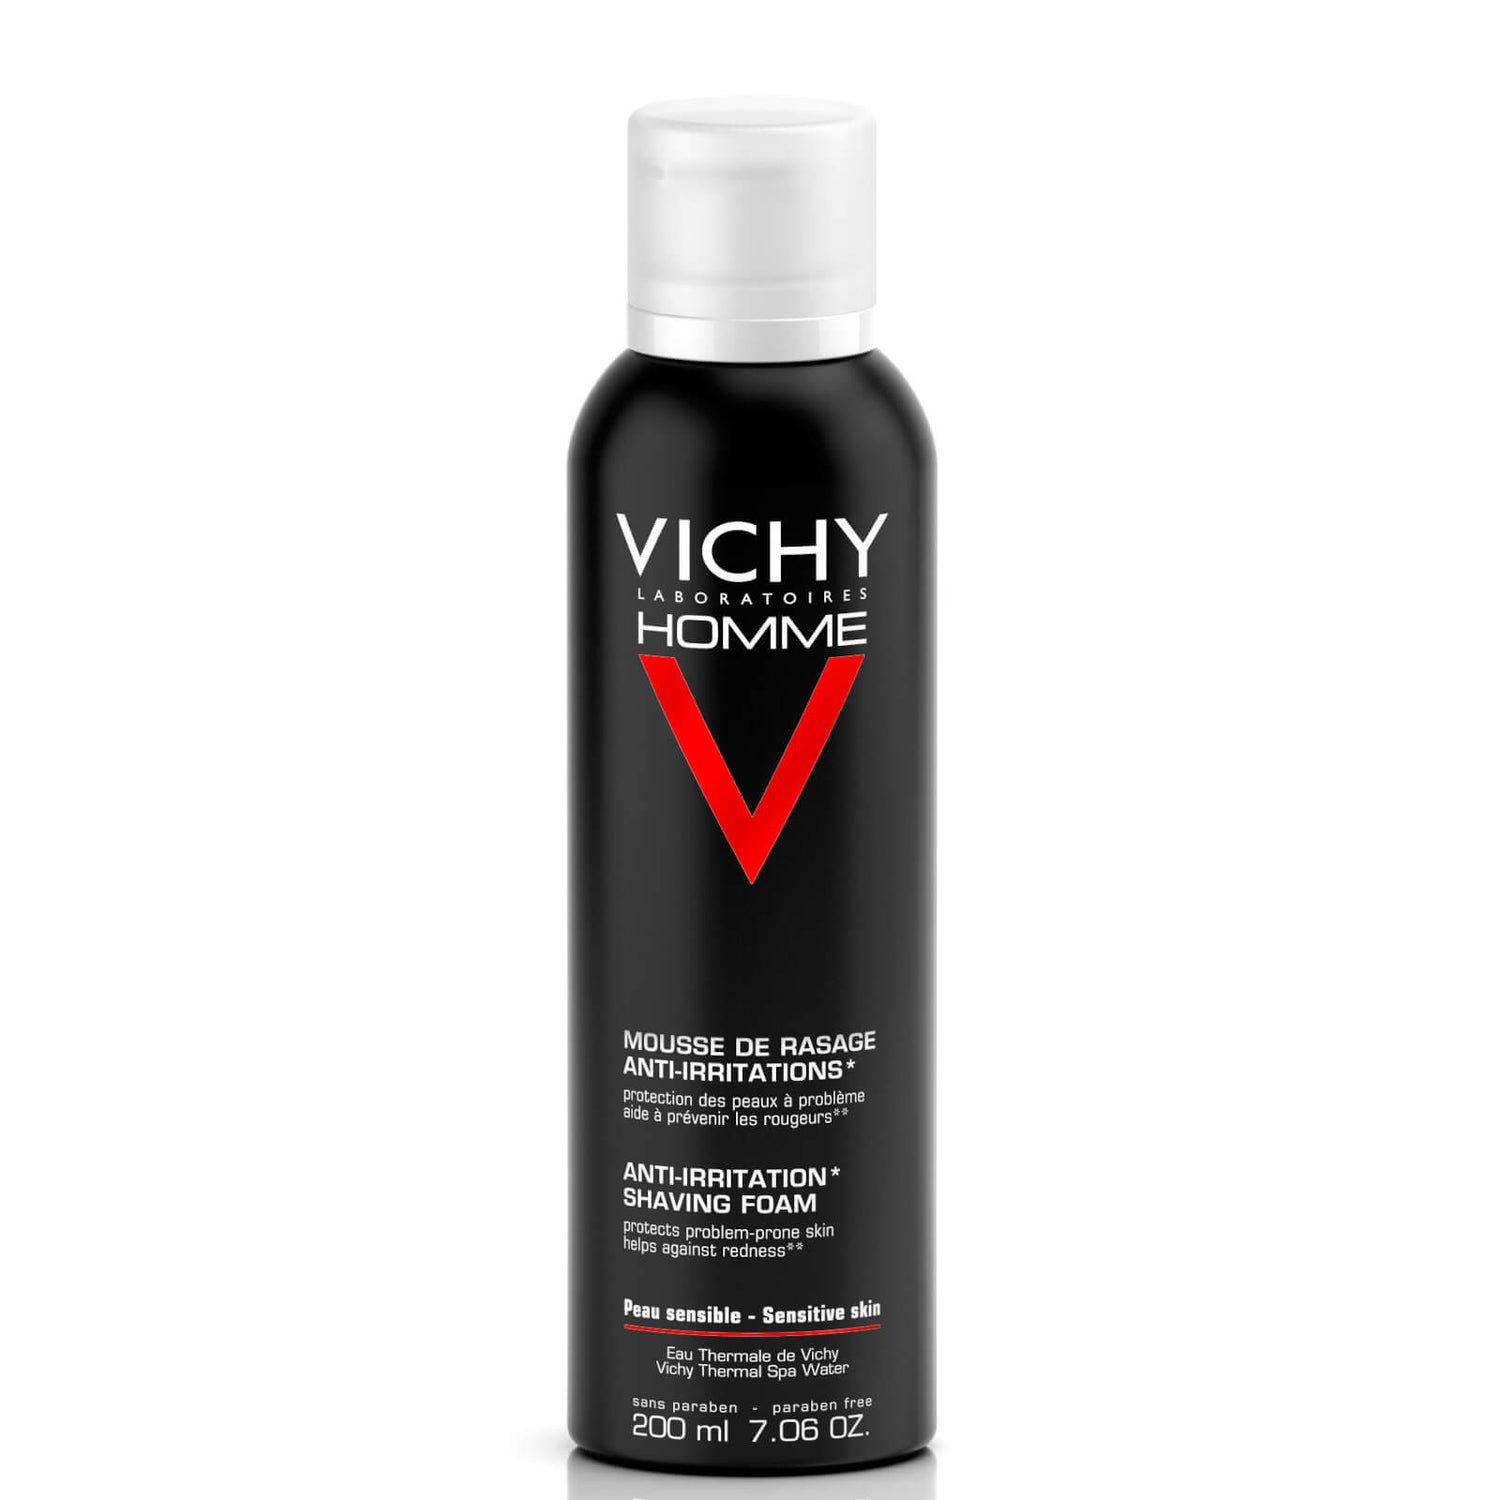 Vichy Homme mousse de rasage anti-irritations peau sensible 200ml